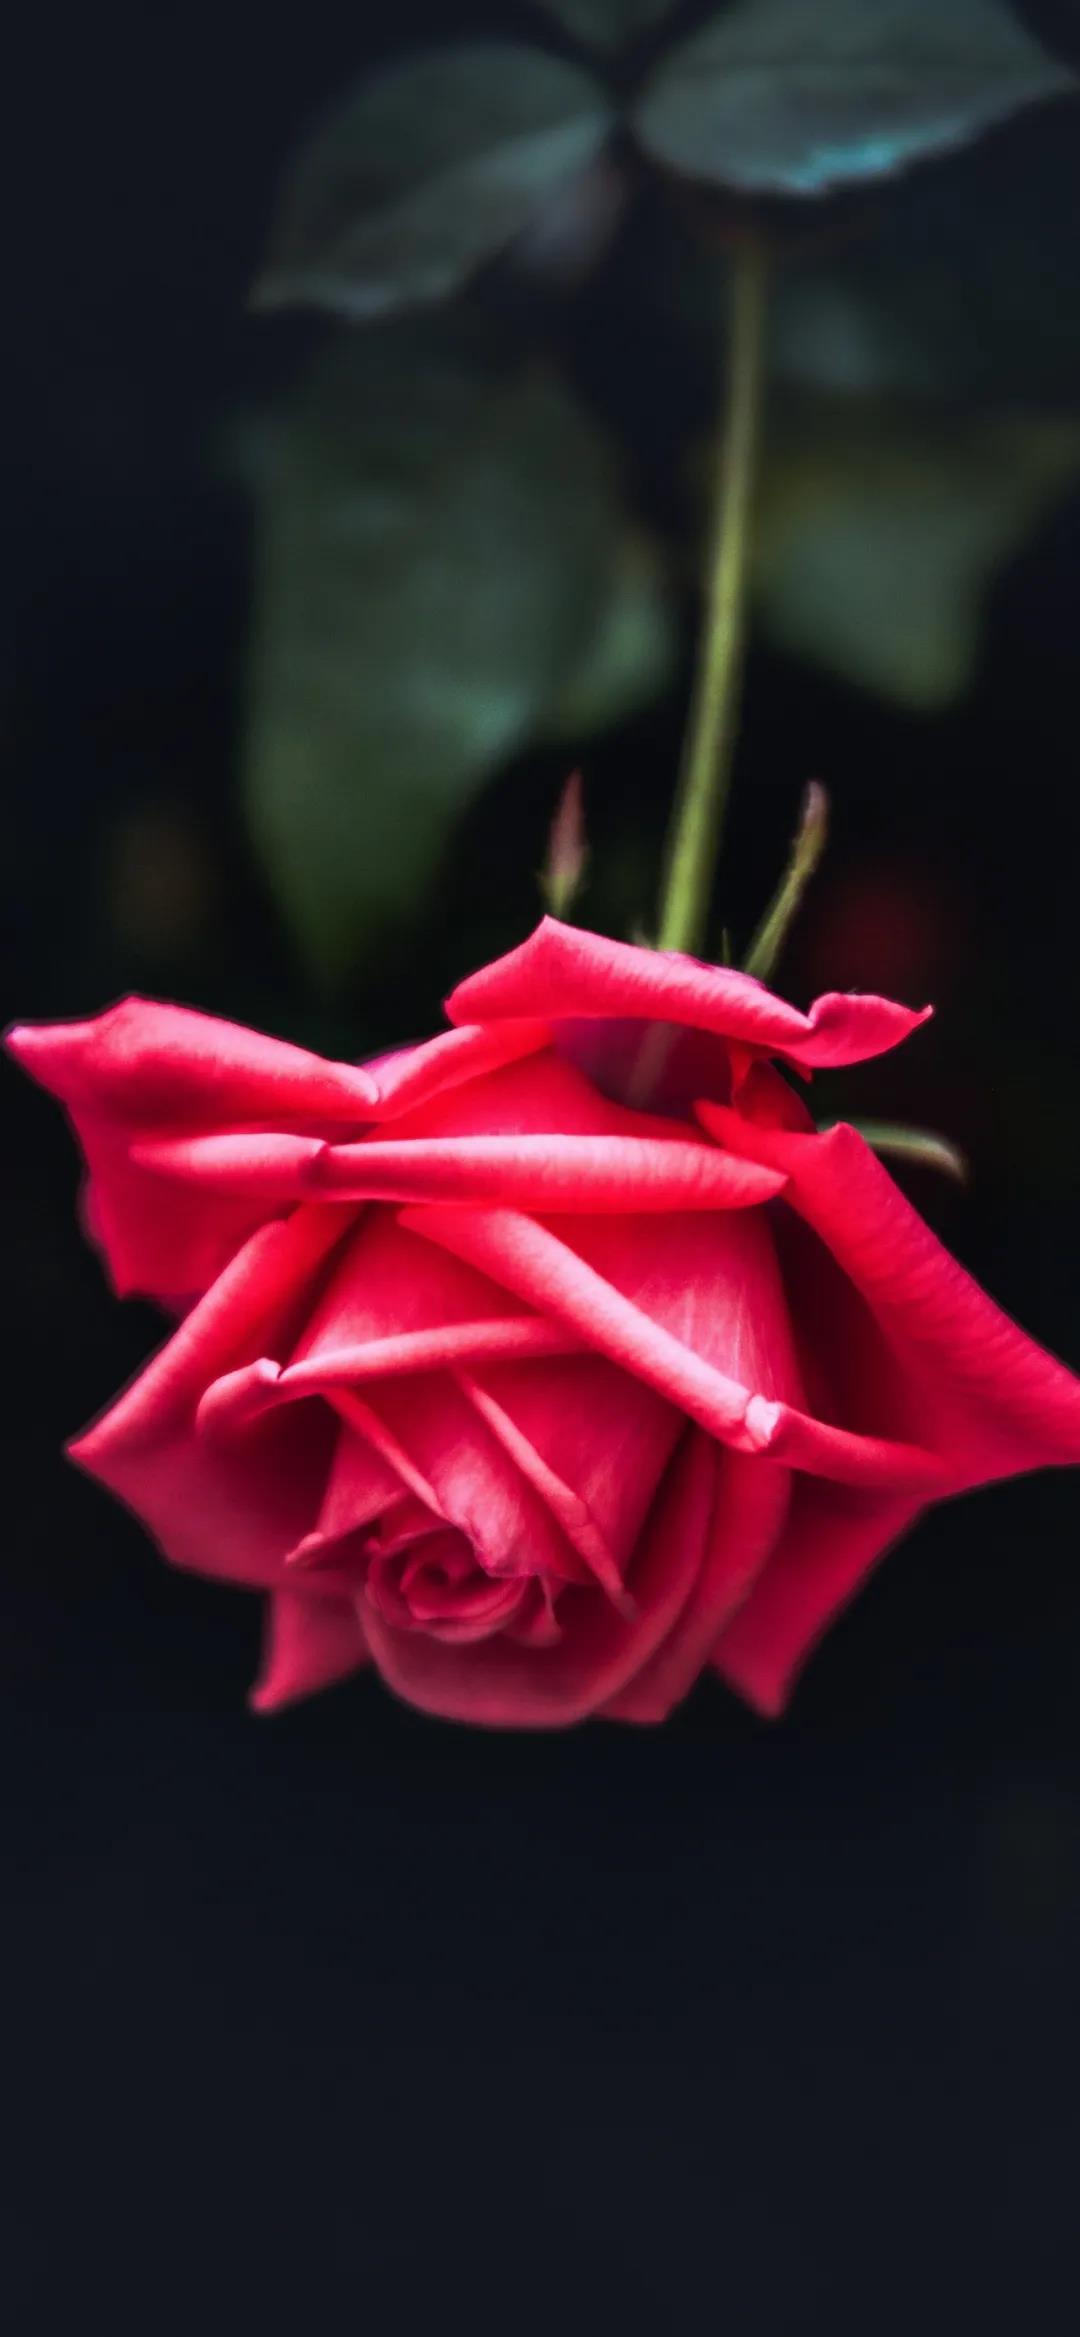 一枝红色玫瑰花唯美伤感手机壁纸图片